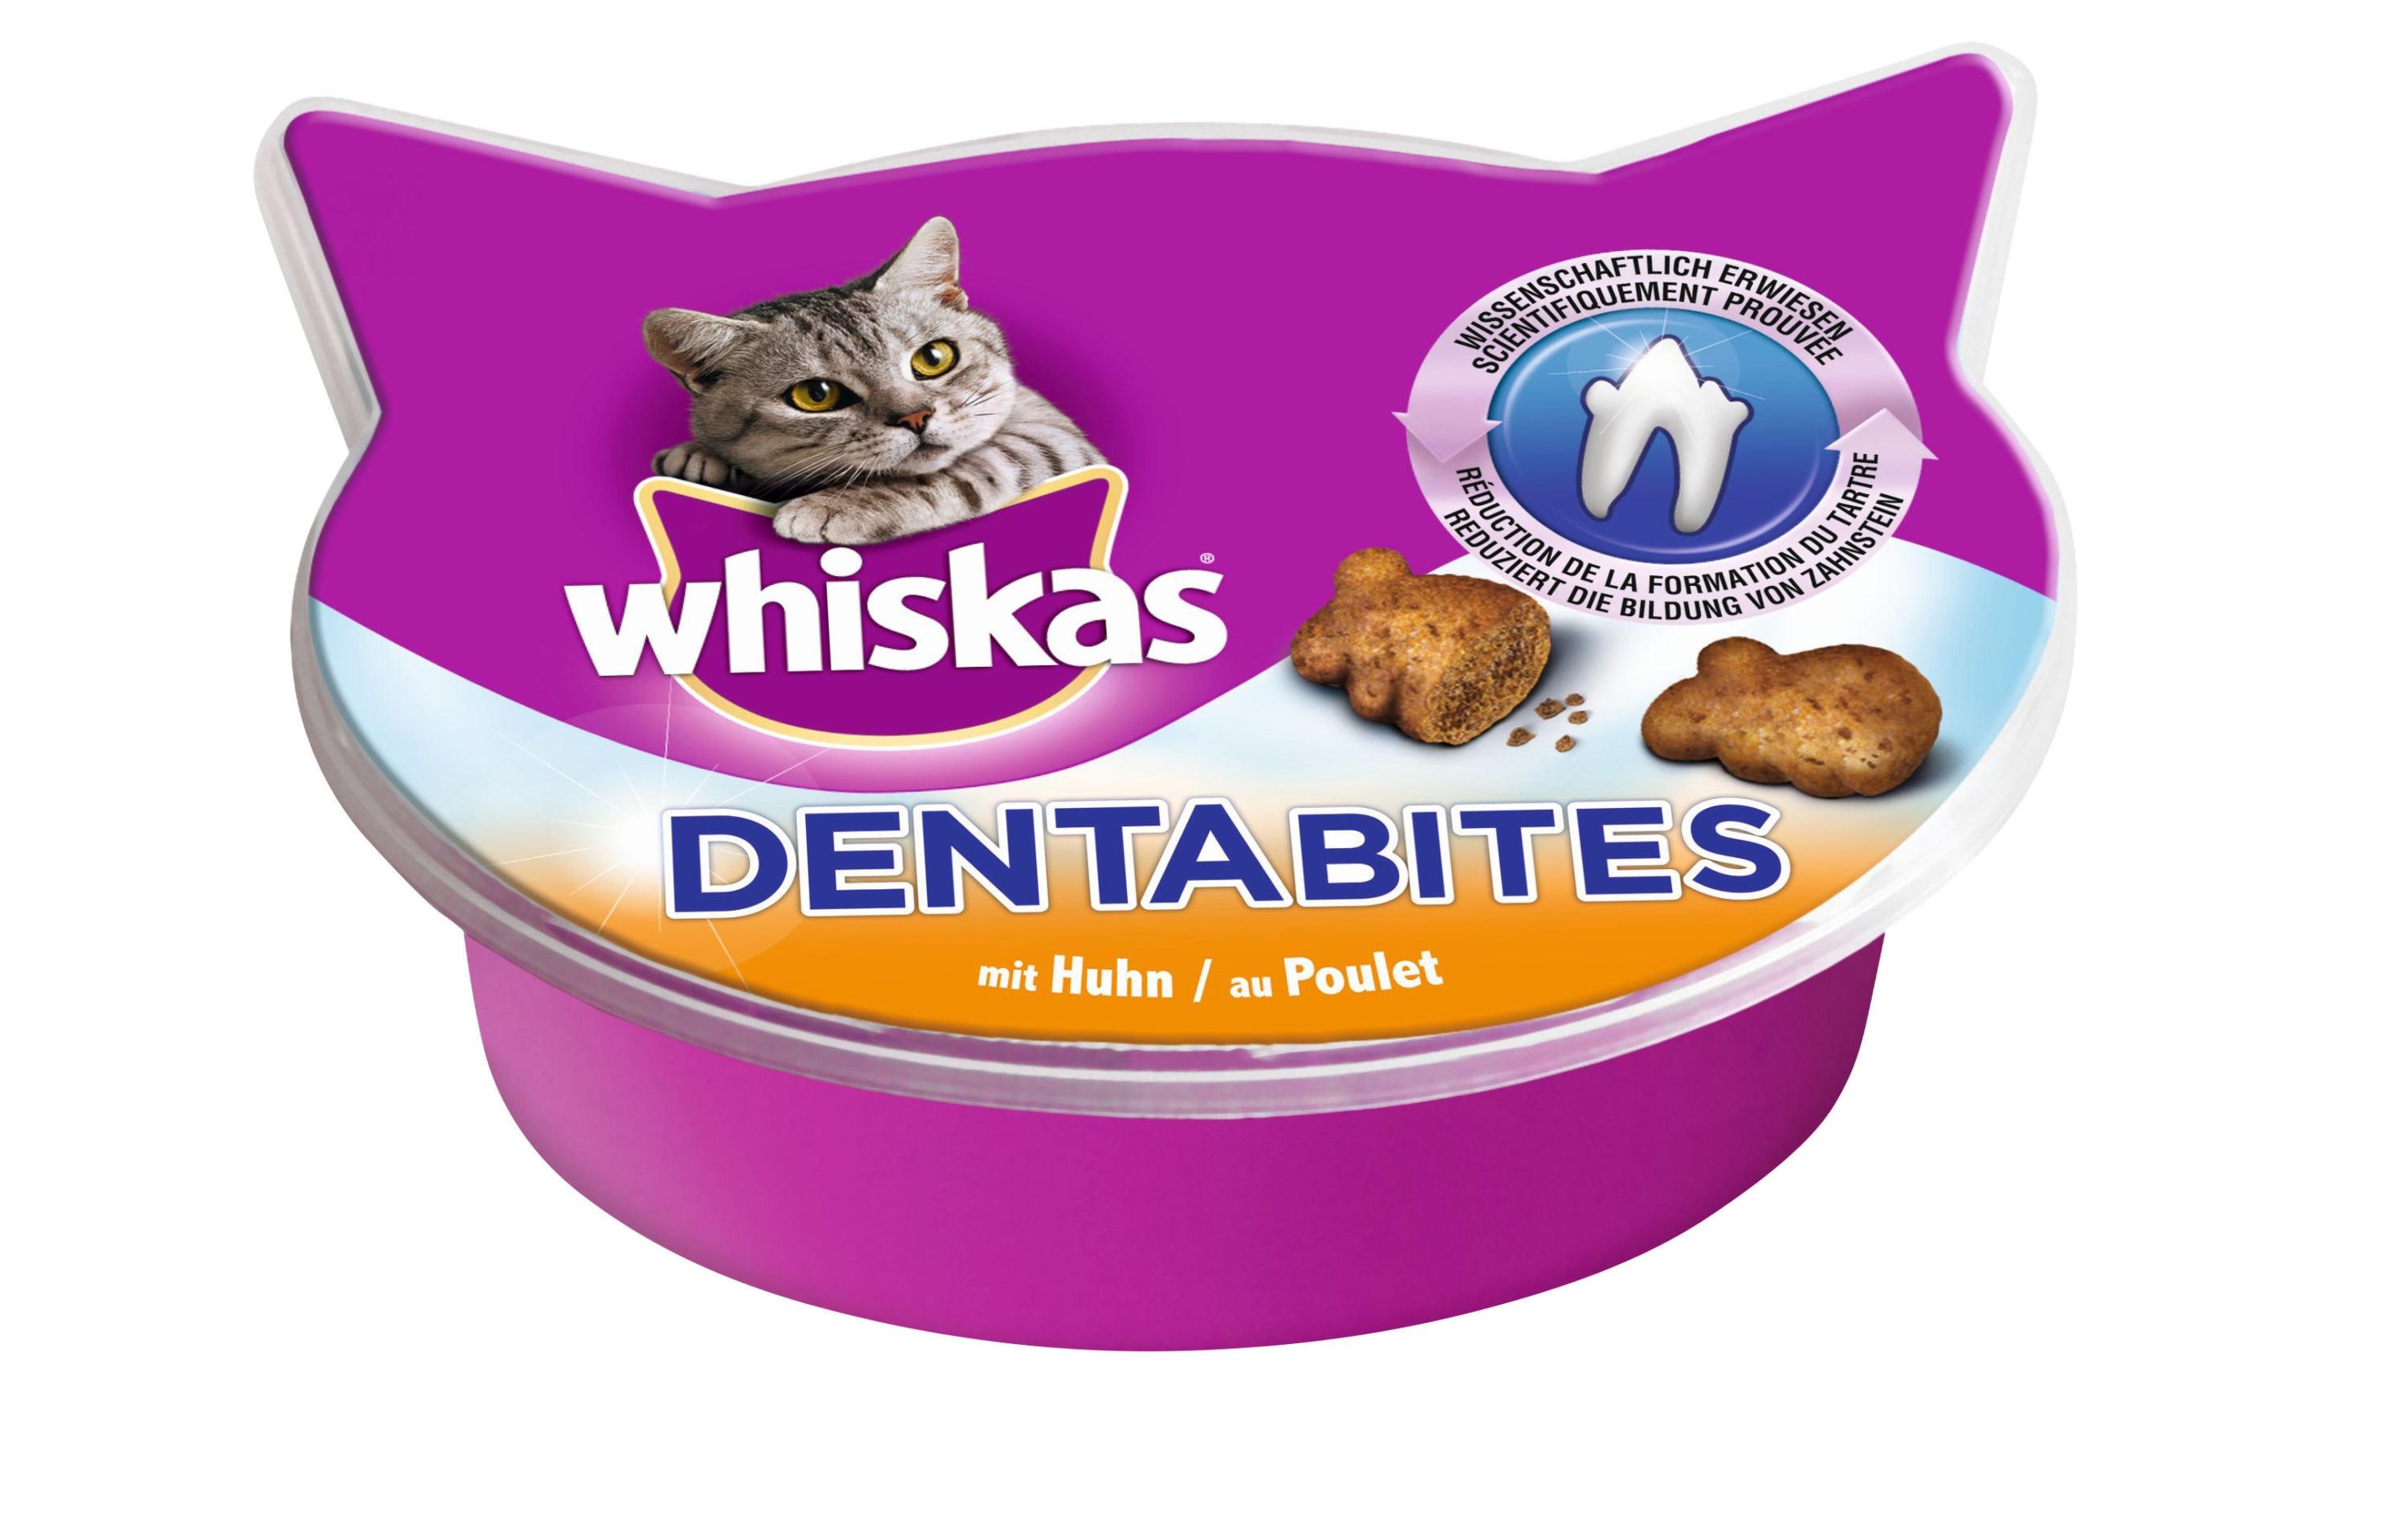 Whiskas Katzen-Snack Dentabites Multipack, 8 x 40g